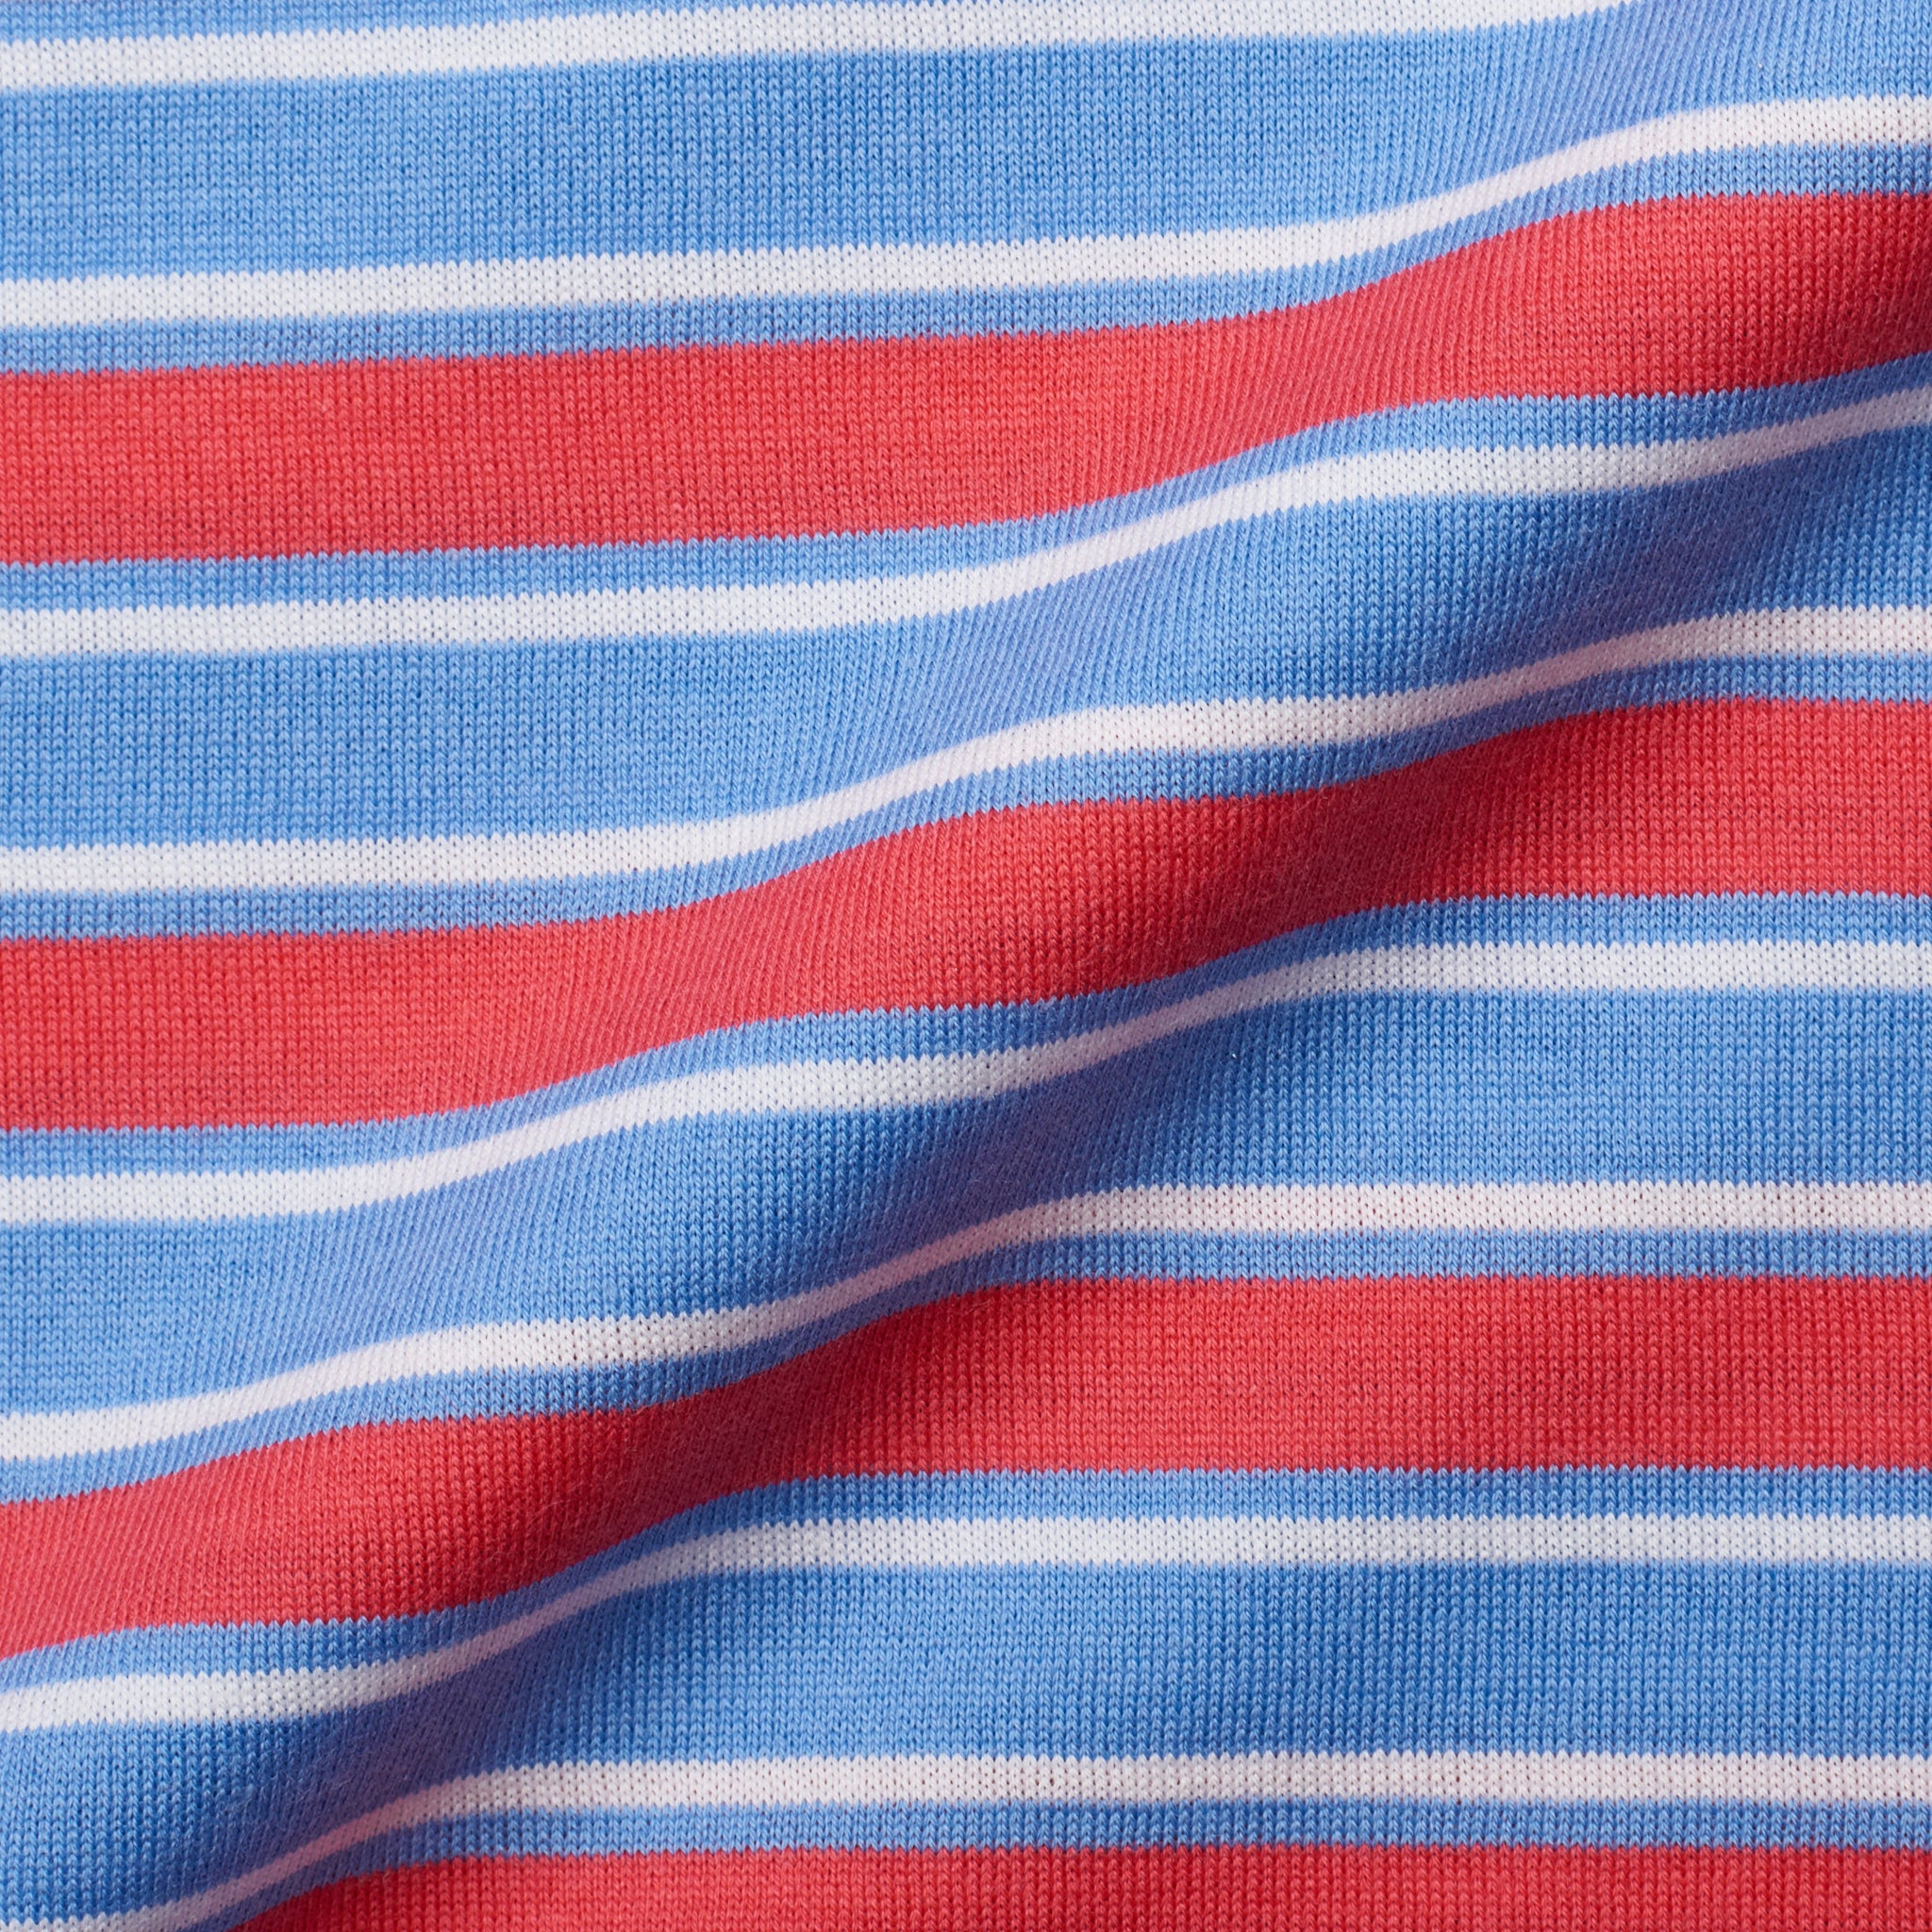 FEDELI "Florida" Multi-Color Striped Cotton Jersey Polo Shirt EU 52 NEW US L FEDELI